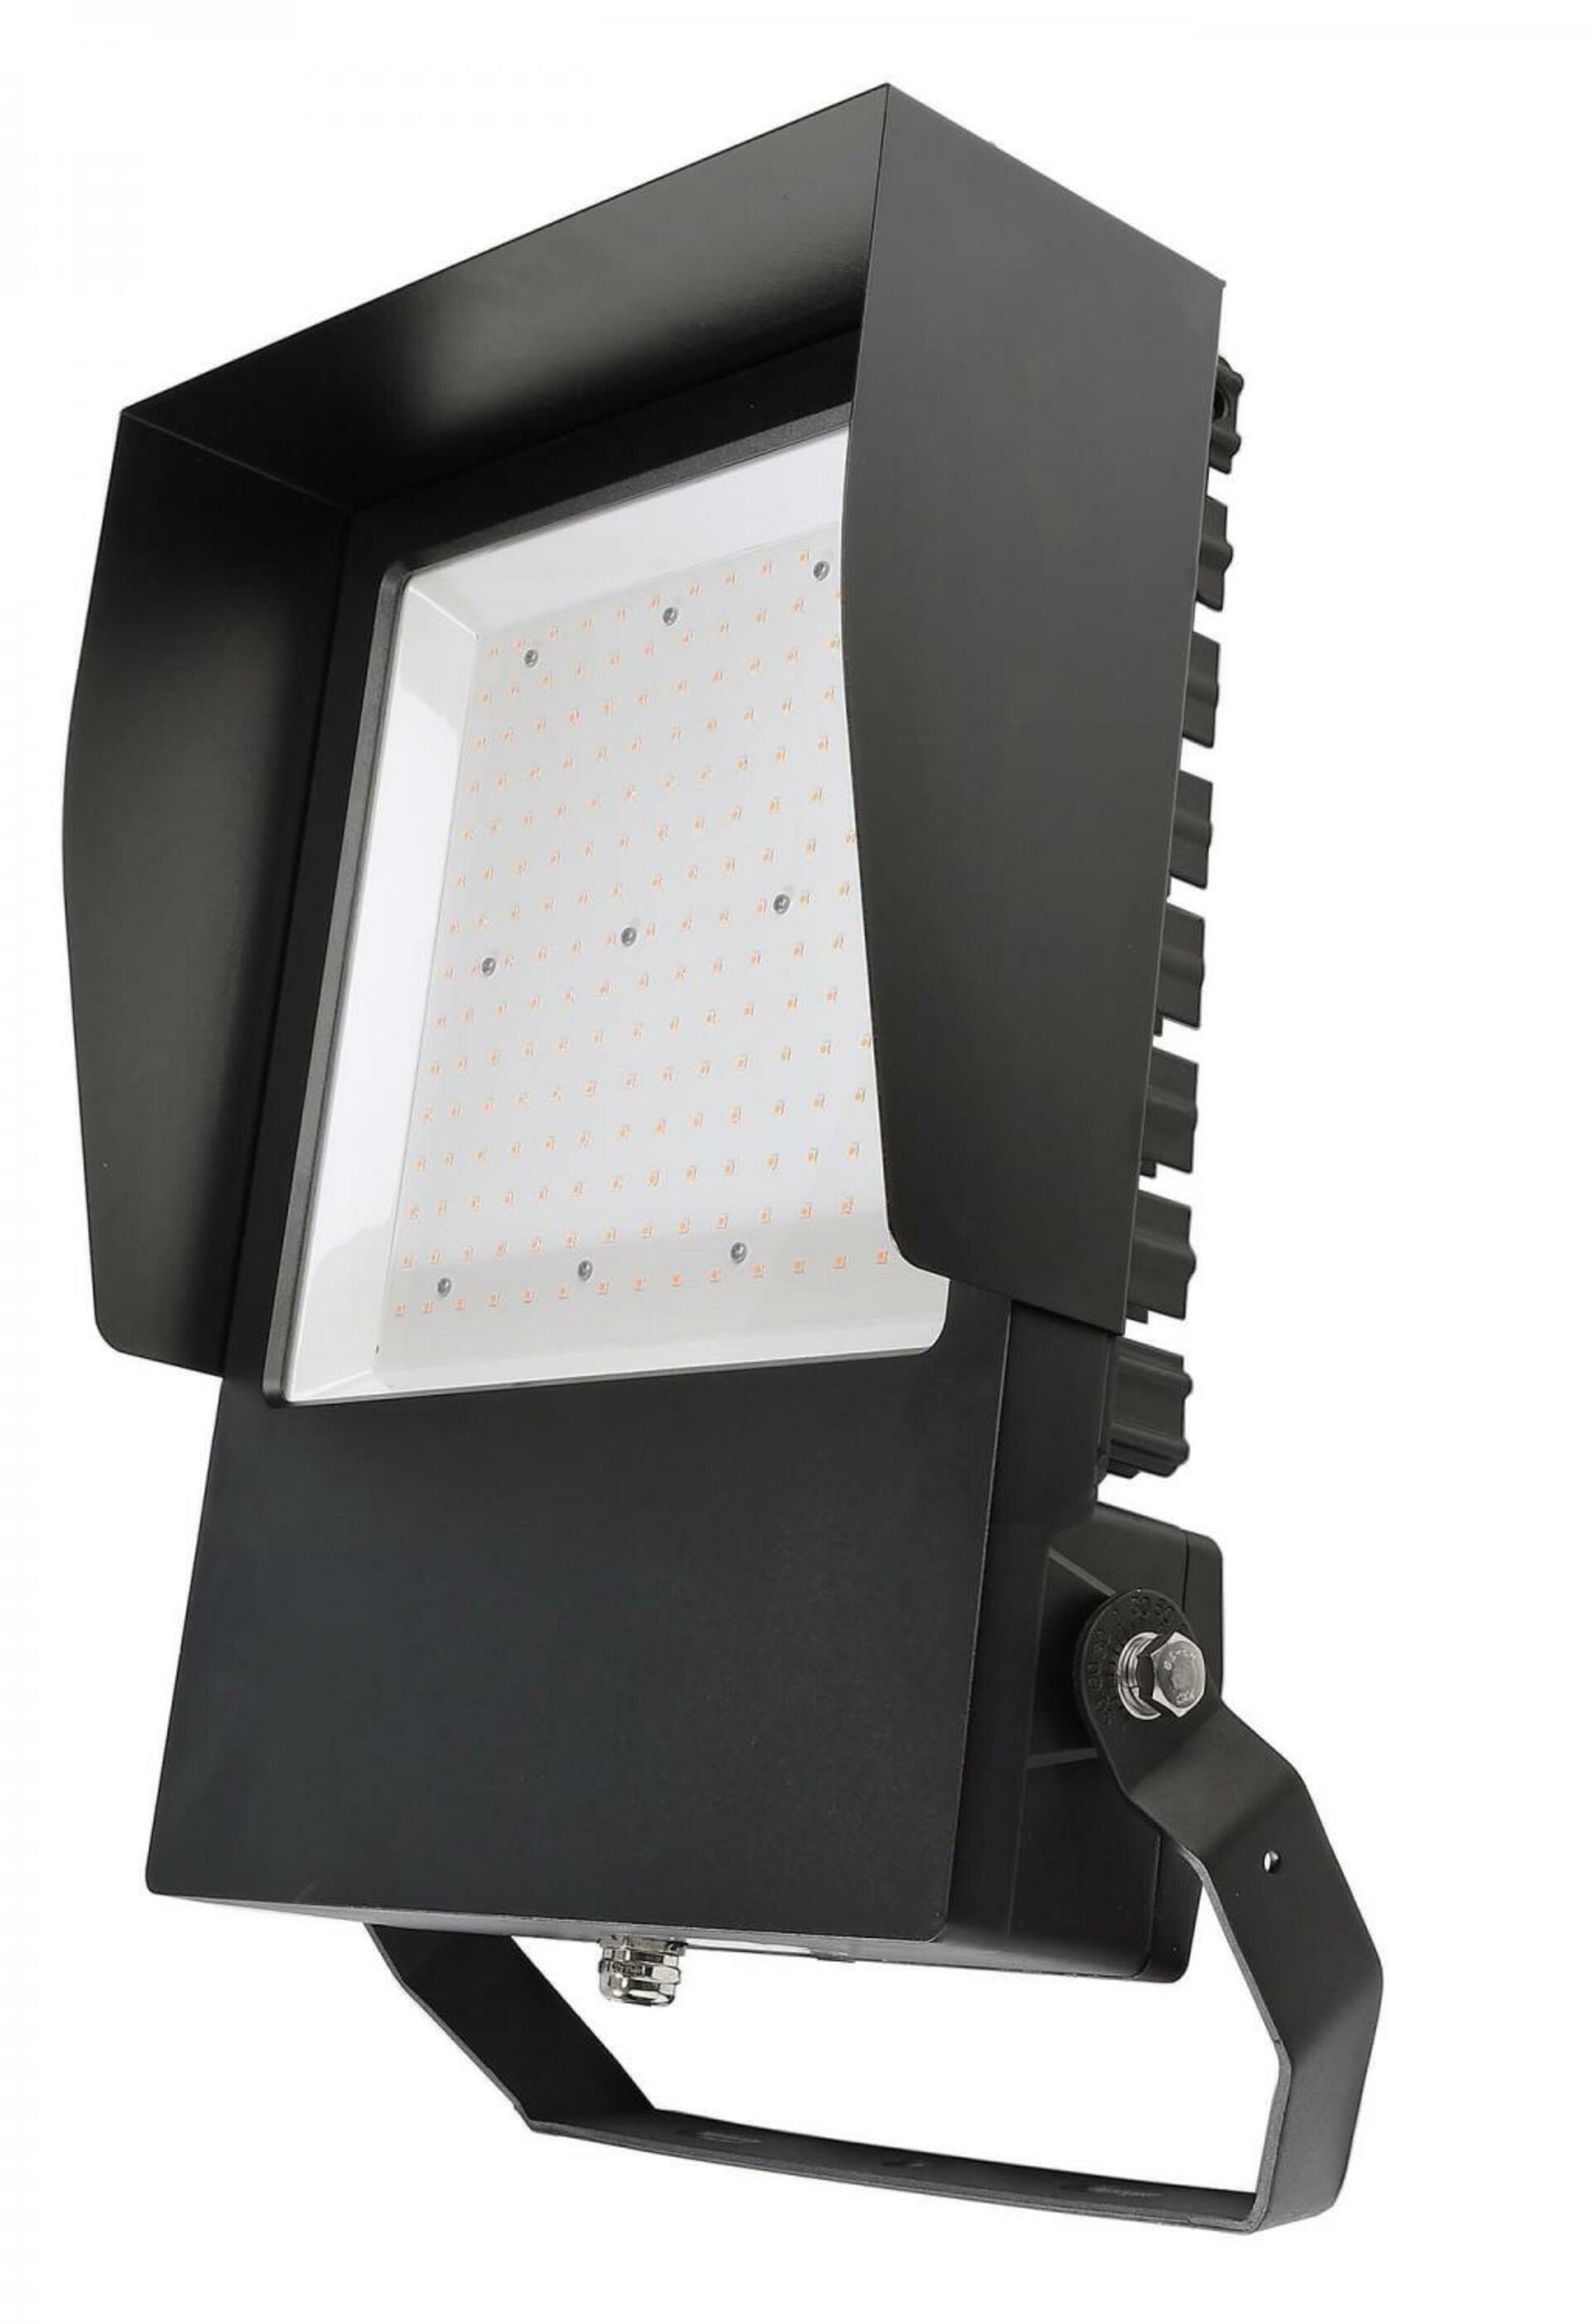 Light Impressions Deko-Light ochrana proti oslnění pro sérii Atik  930410